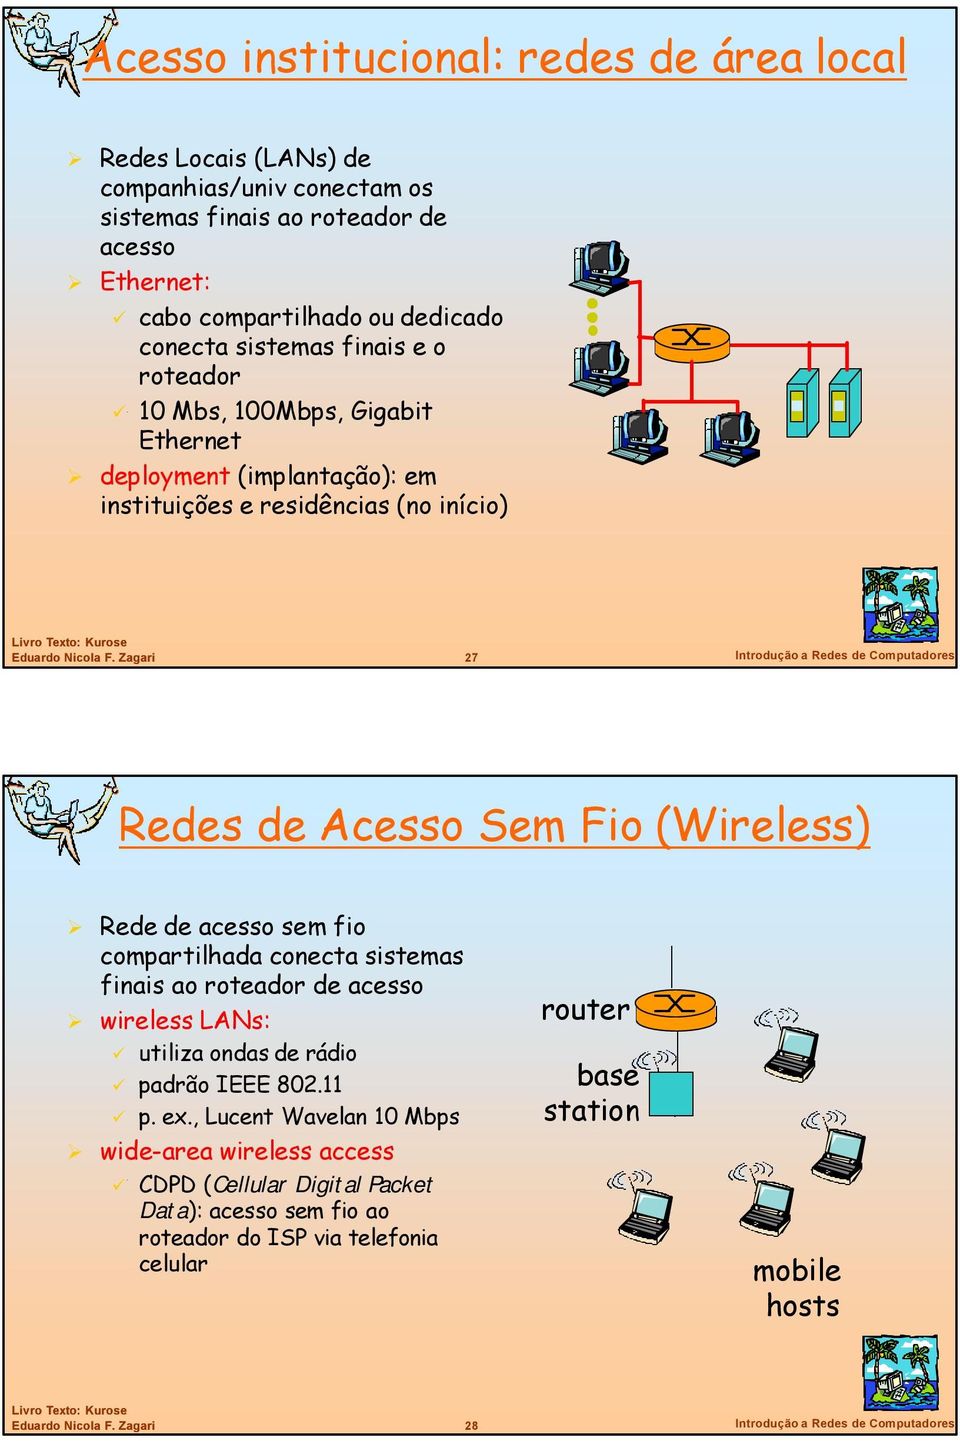 (Wireless) Rede de acesso sem fio compartilhada conecta sistemas finais ao roteador de acesso wireless LANs: utiliza ondas de rádio padrão IEEE 802.11 p. ex.